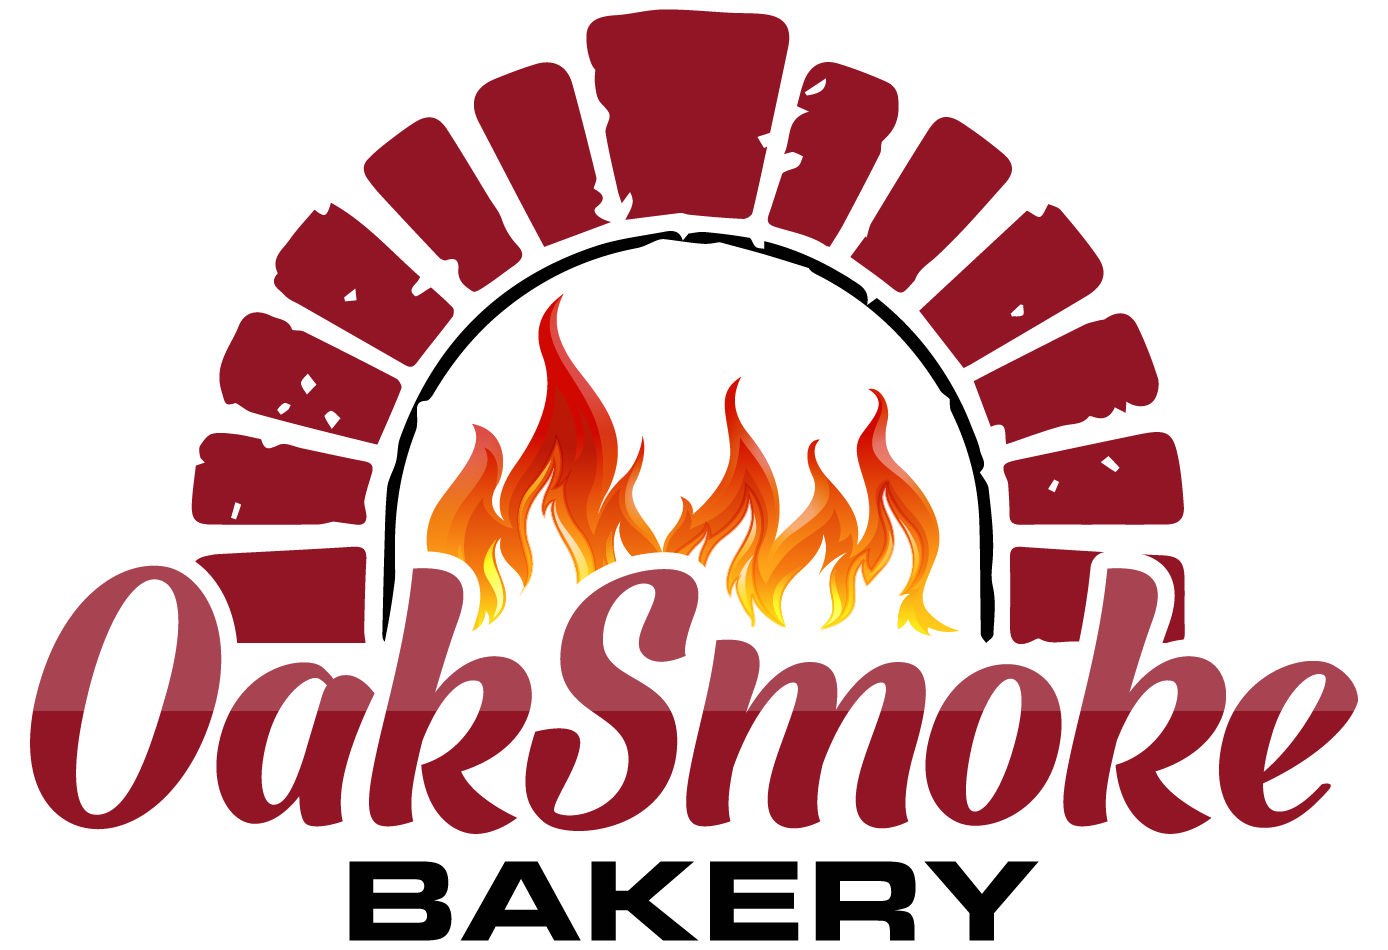 OakSmoke Bakery - Dublin based artisan bakery